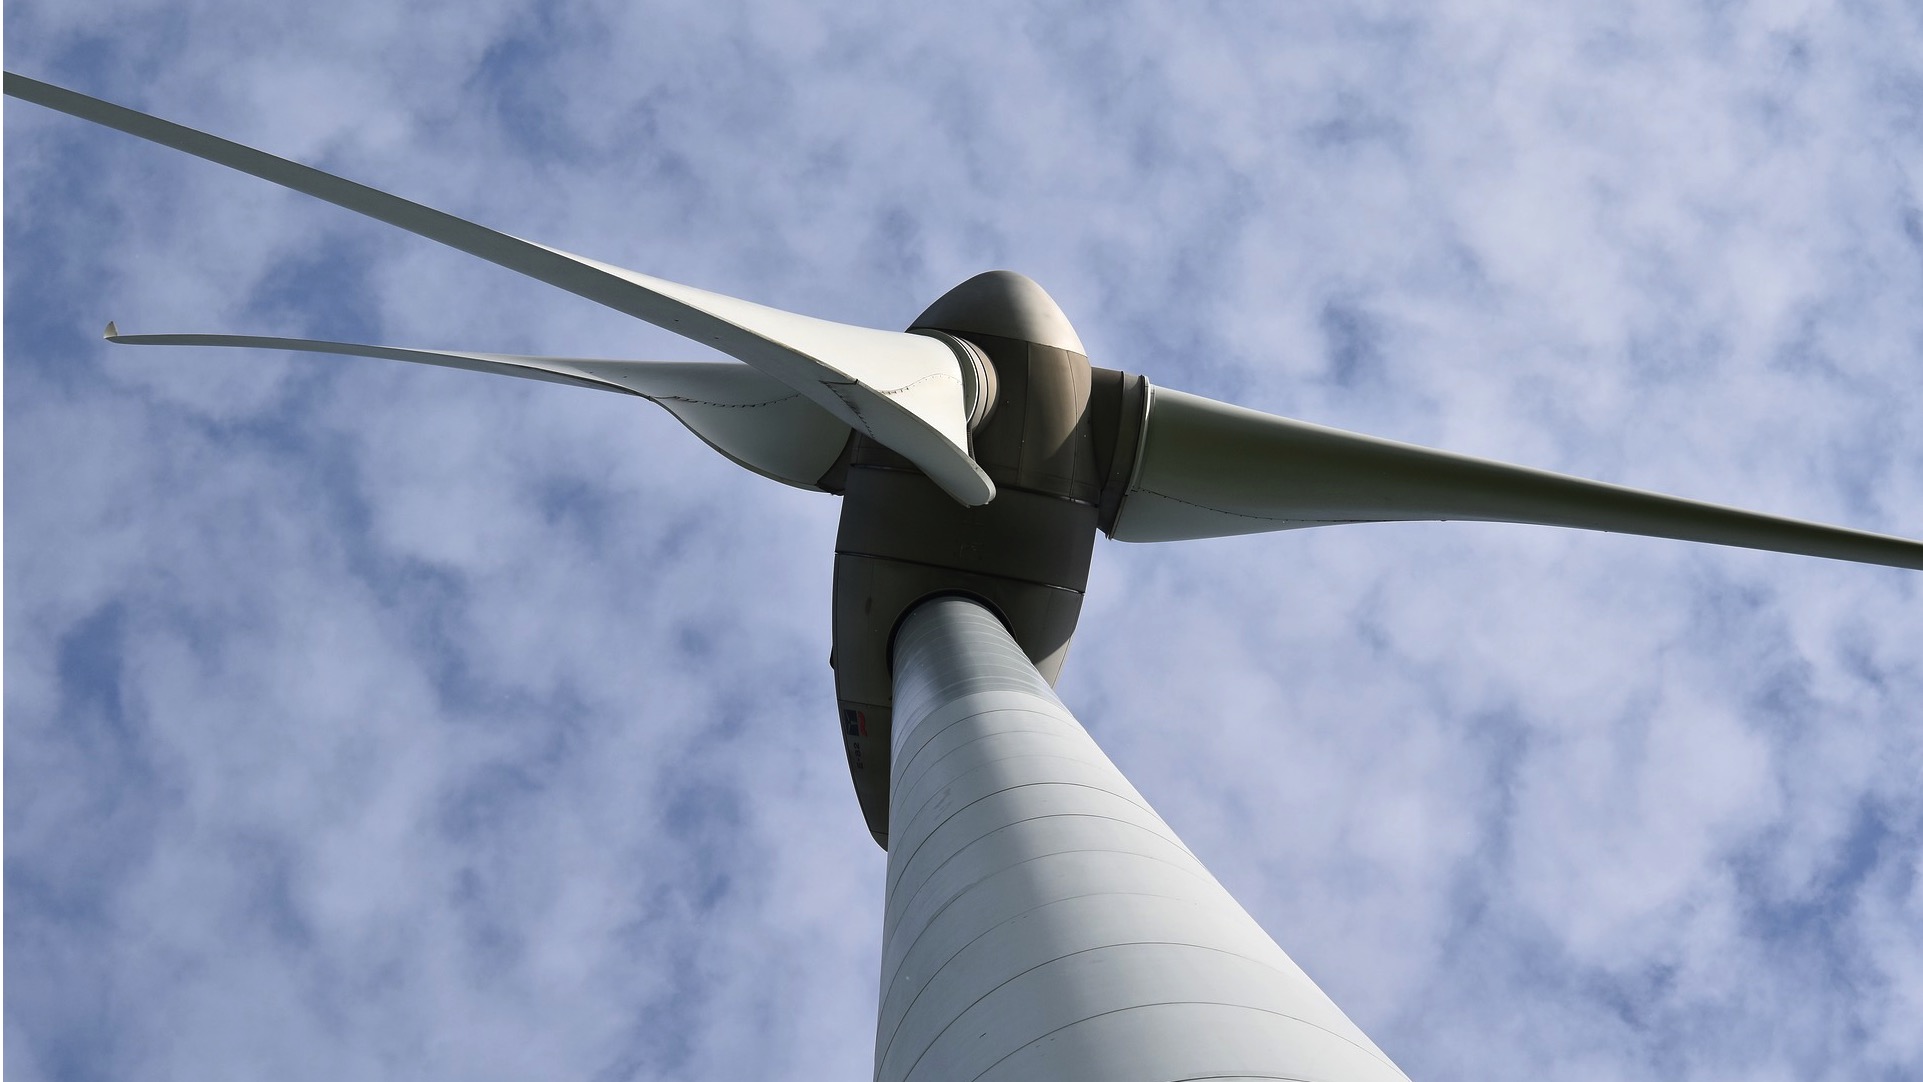 Projet de 4 éoliennes à Ville-Pommeroeul : le permis refusé par le gouvernement wallon